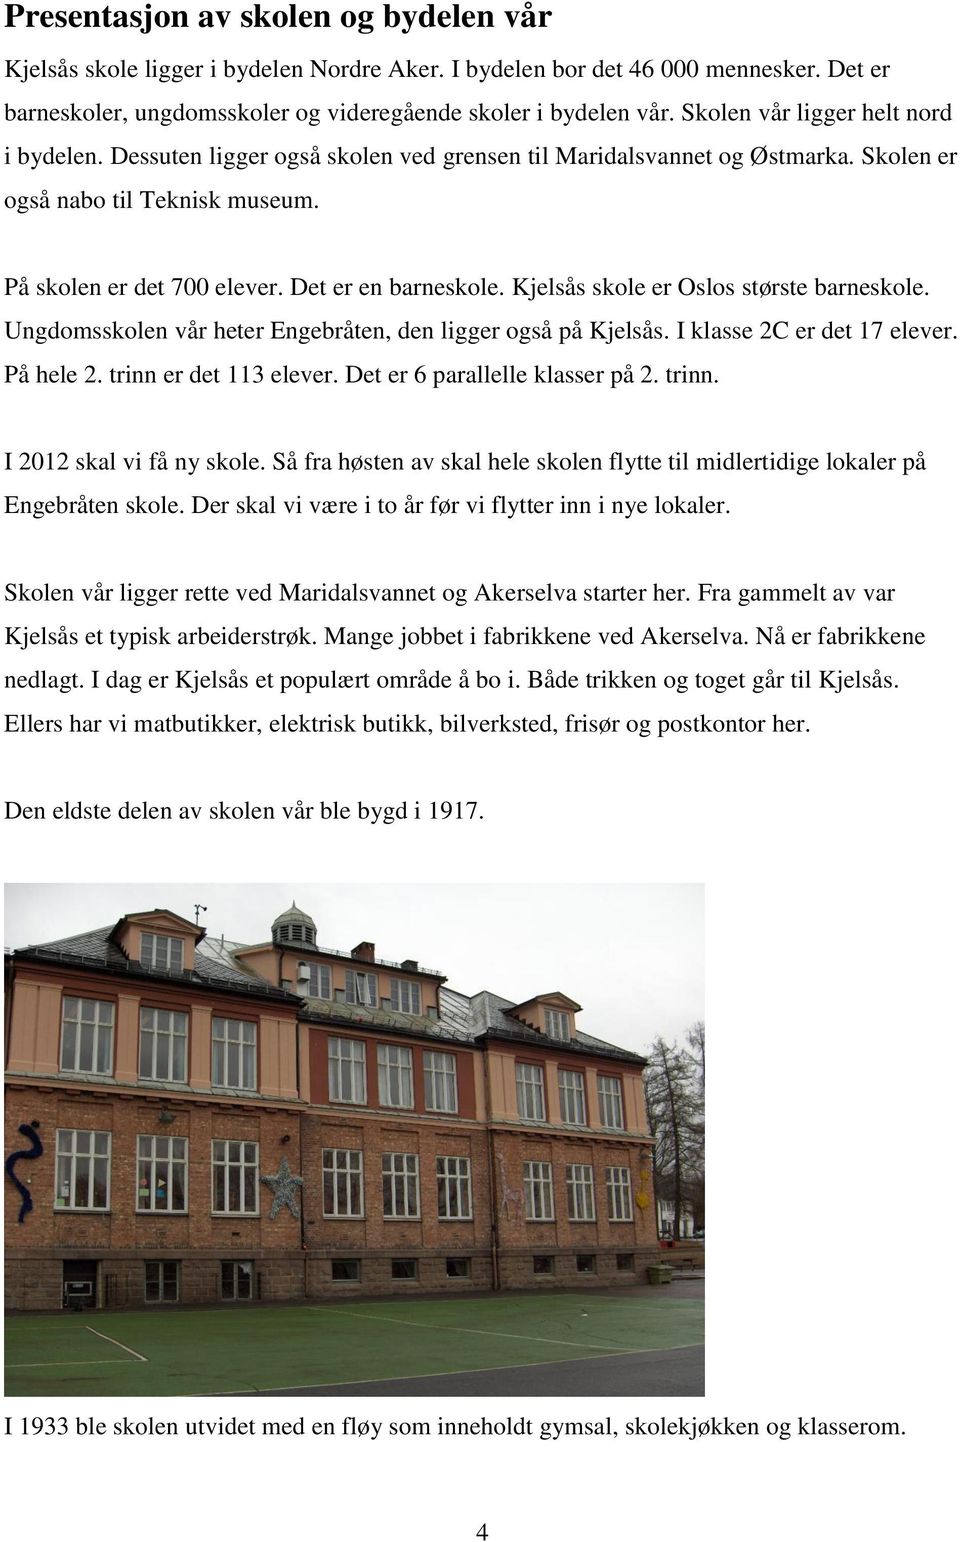 Det er en barneskole. Kjelsås skole er Oslos største barneskole. Ungdomsskolen vår heter Engebråten, den ligger også på Kjelsås. I klasse 2C er det 17 elever. På hele 2. trinn er det 113 elever.